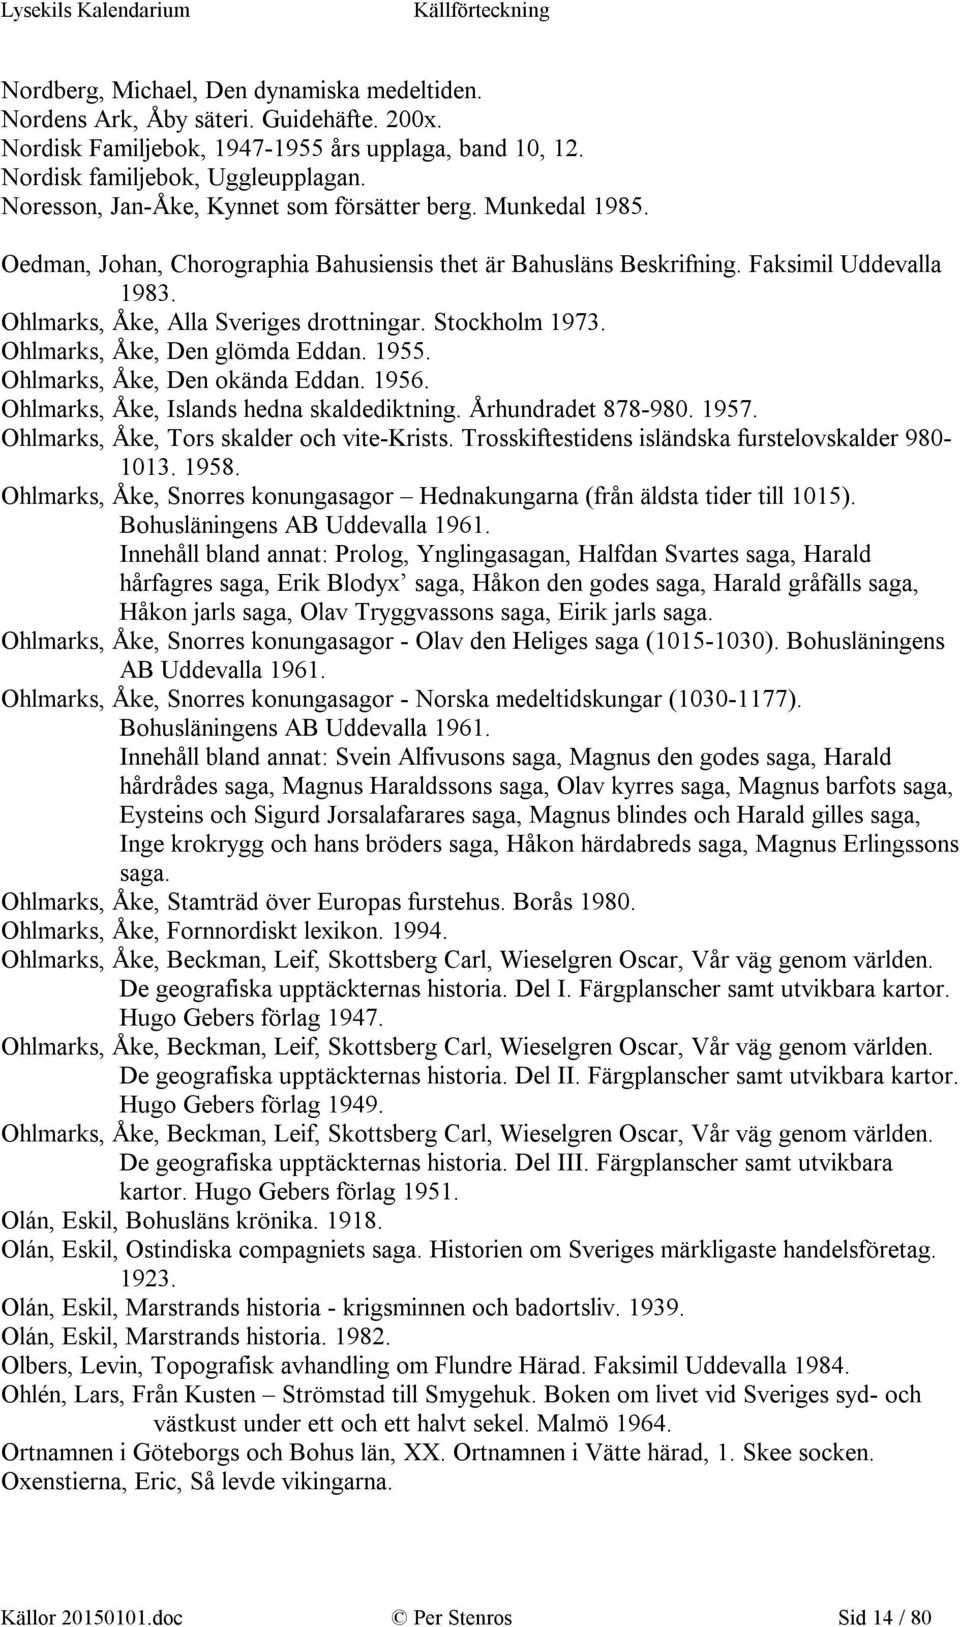 Stockholm 1973. Ohlmarks, Åke, Den glömda Eddan. 1955. Ohlmarks, Åke, Den okända Eddan. 1956. Ohlmarks, Åke, Islands hedna skaldediktning. Århundradet 878-980. 1957.